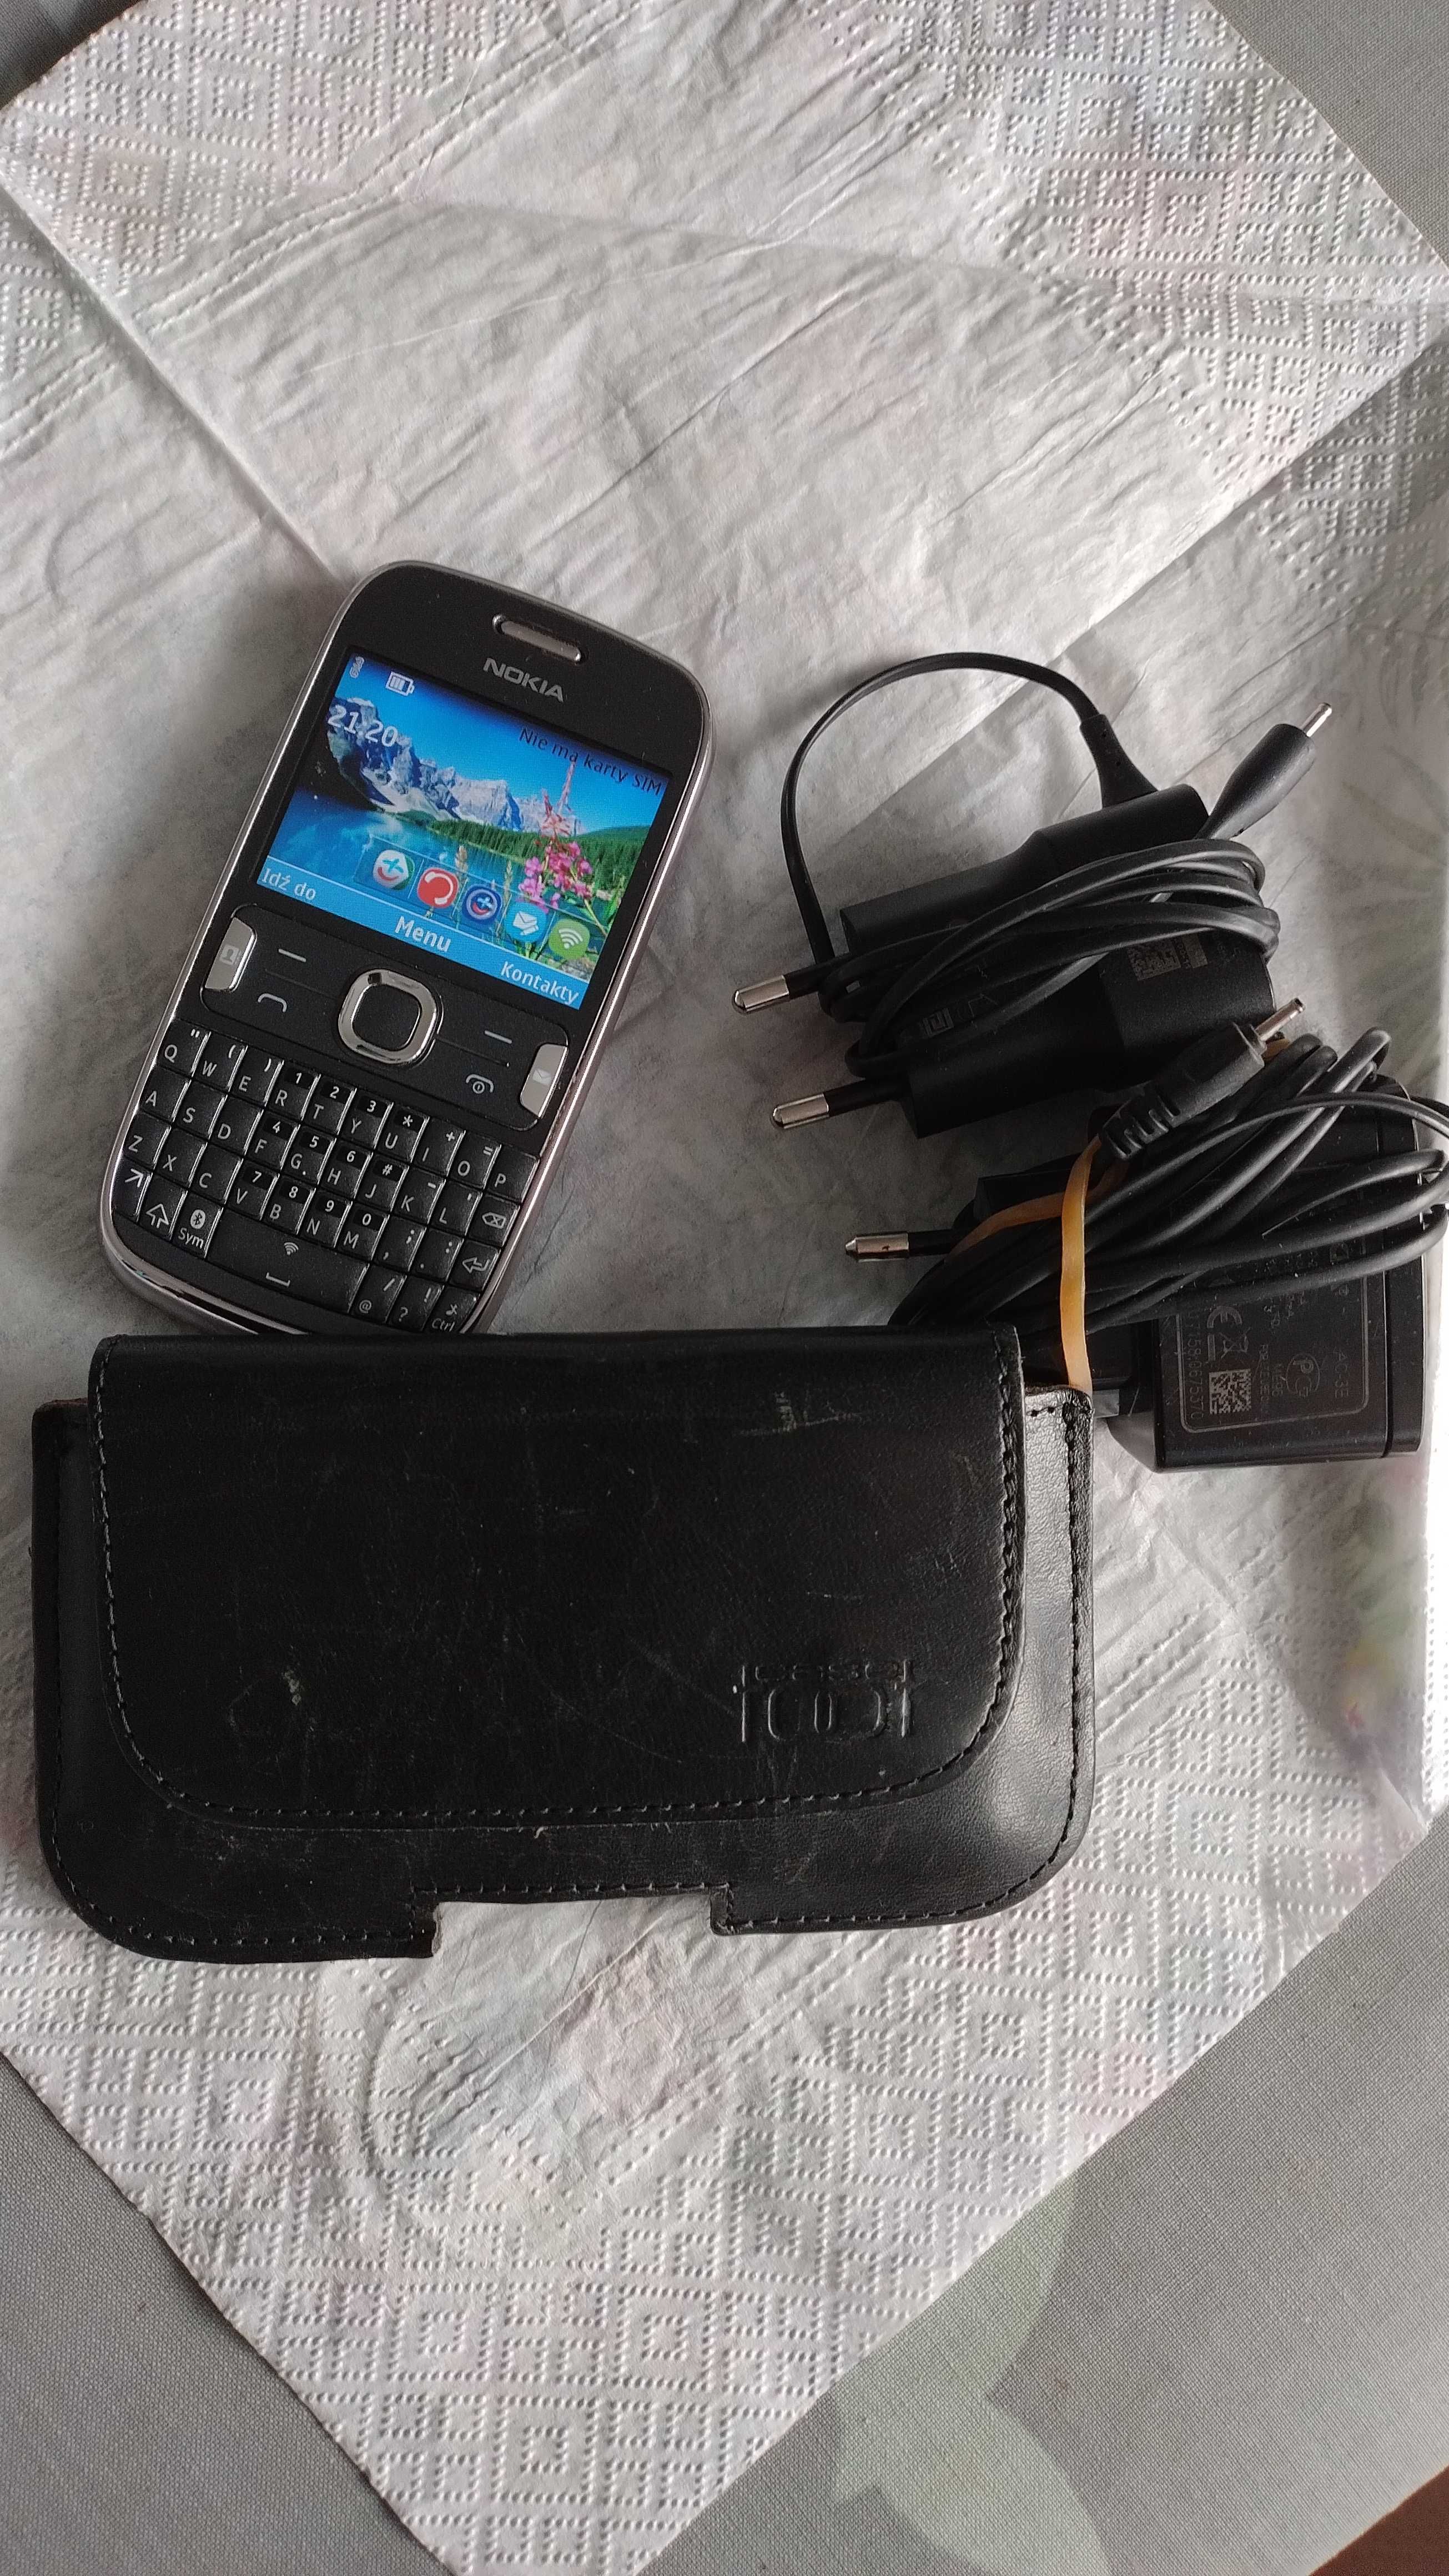 Nokia 302 z etui i ładowarką